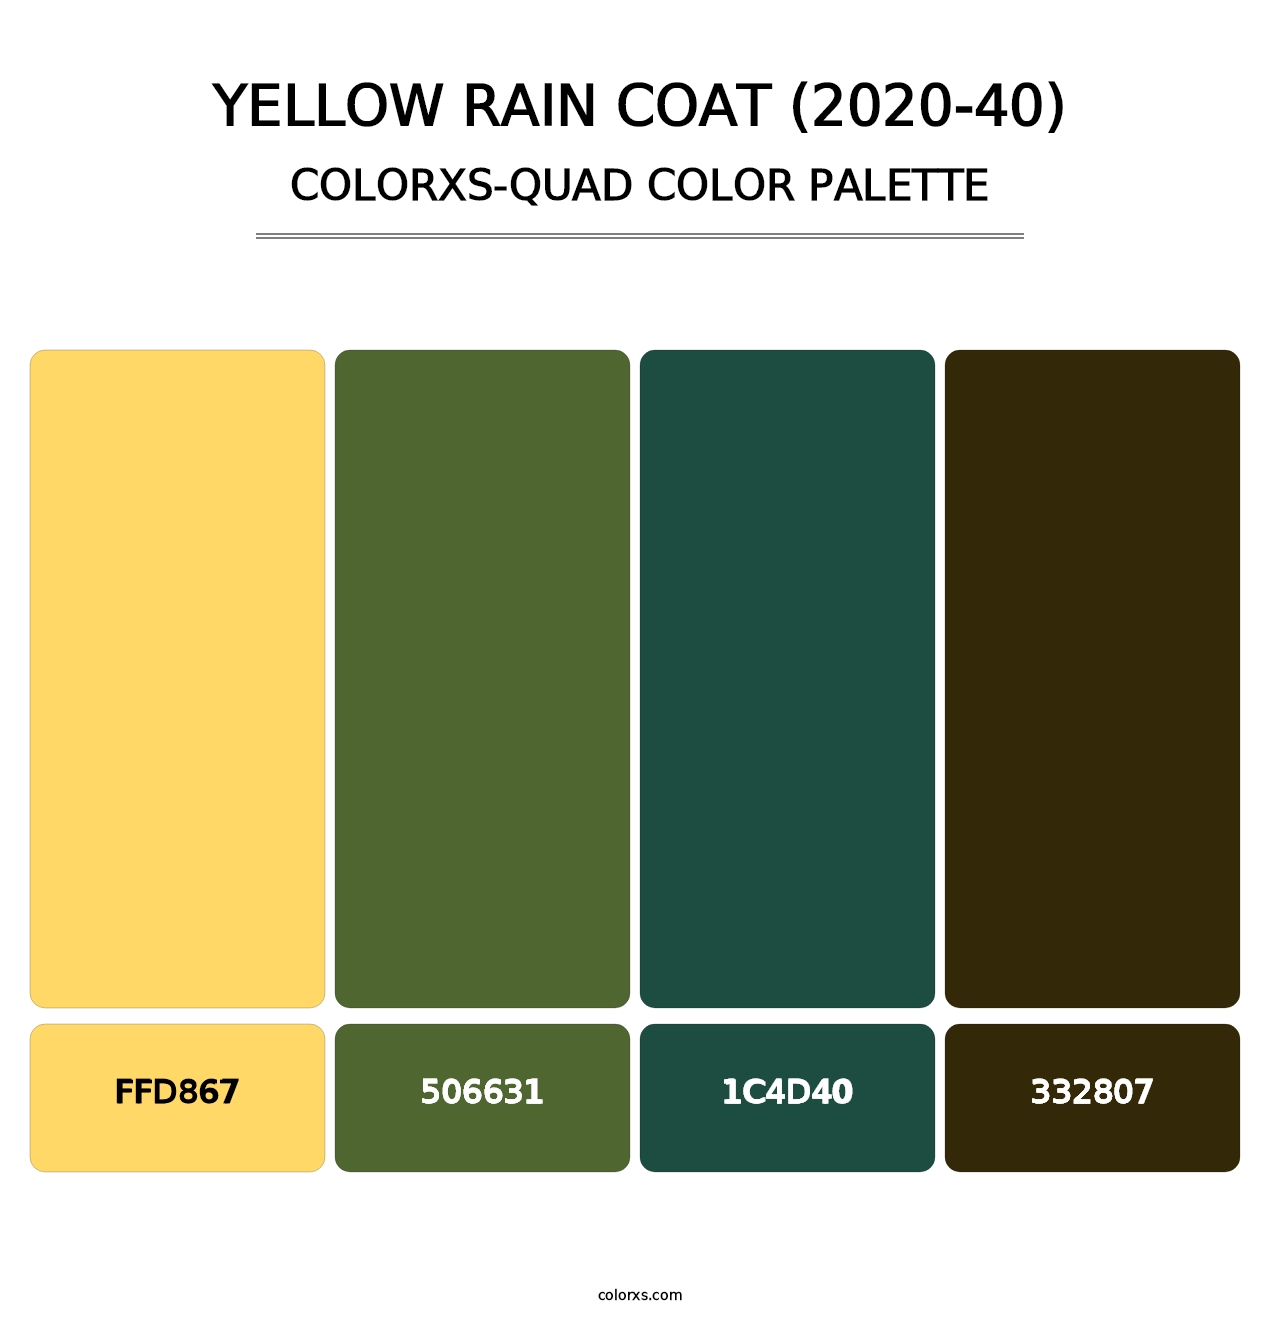 Yellow Rain Coat (2020-40) - Colorxs Quad Palette